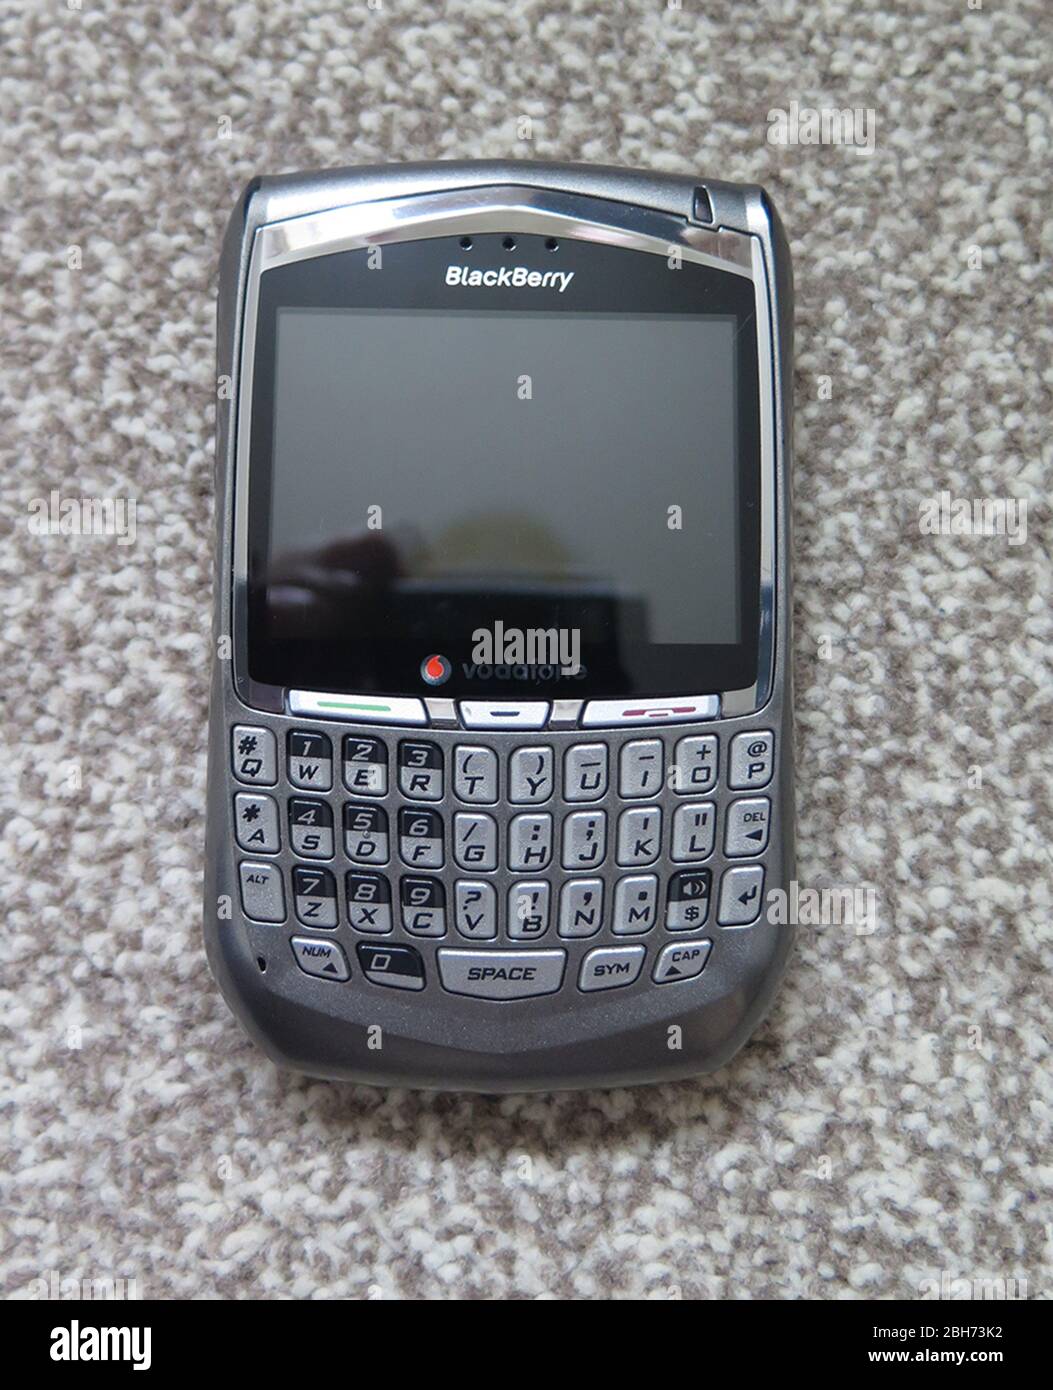 Blackberry phone Stock Photo